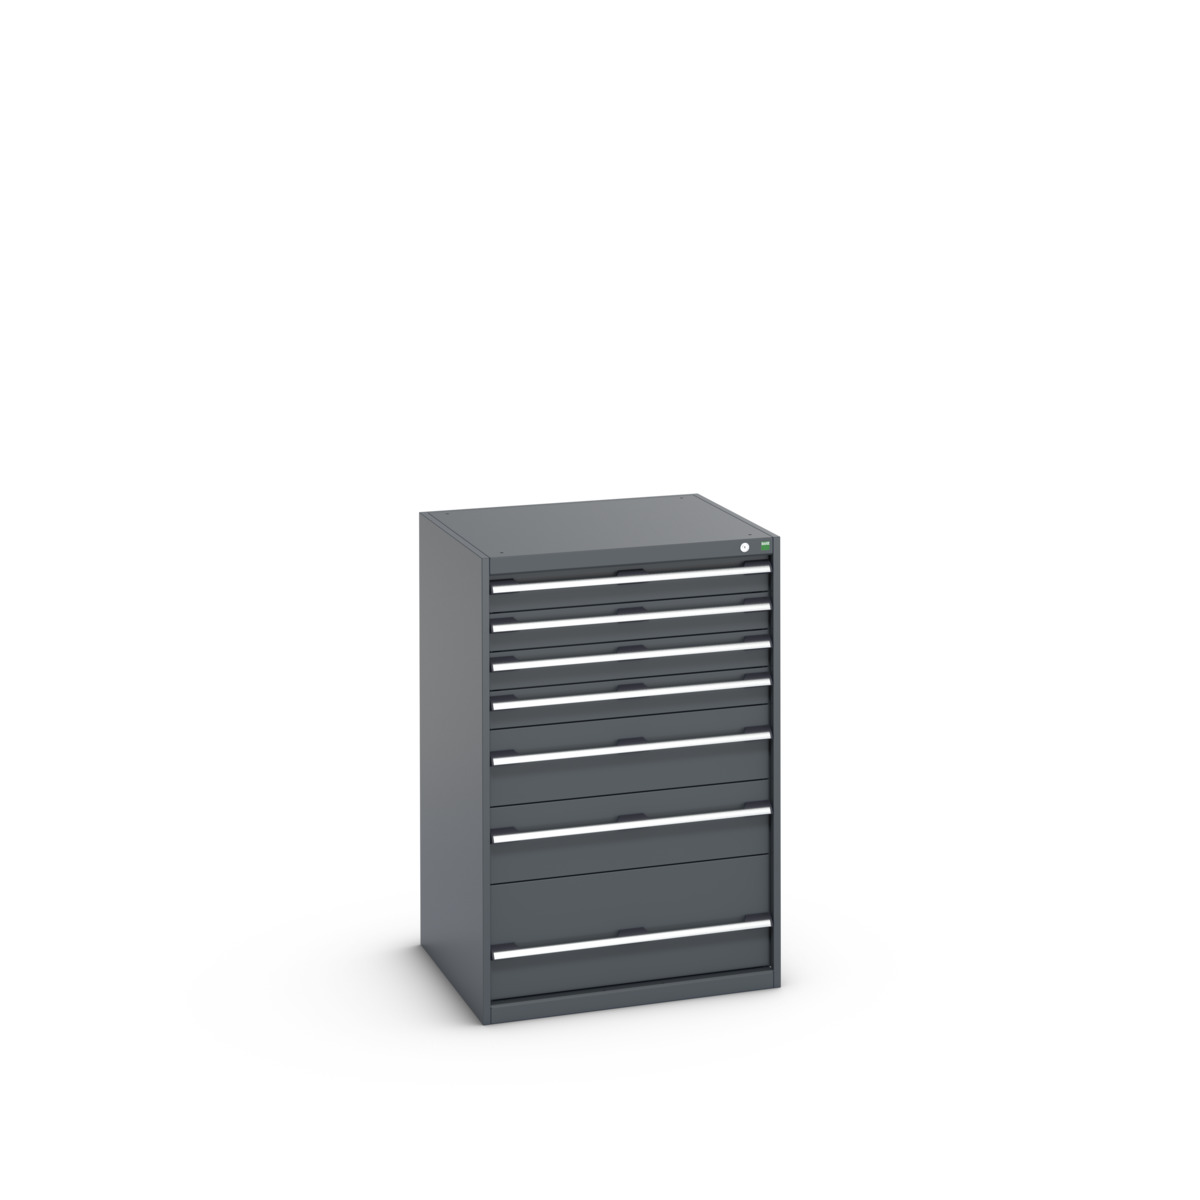 40028031.77V - cubio drawer cabinet